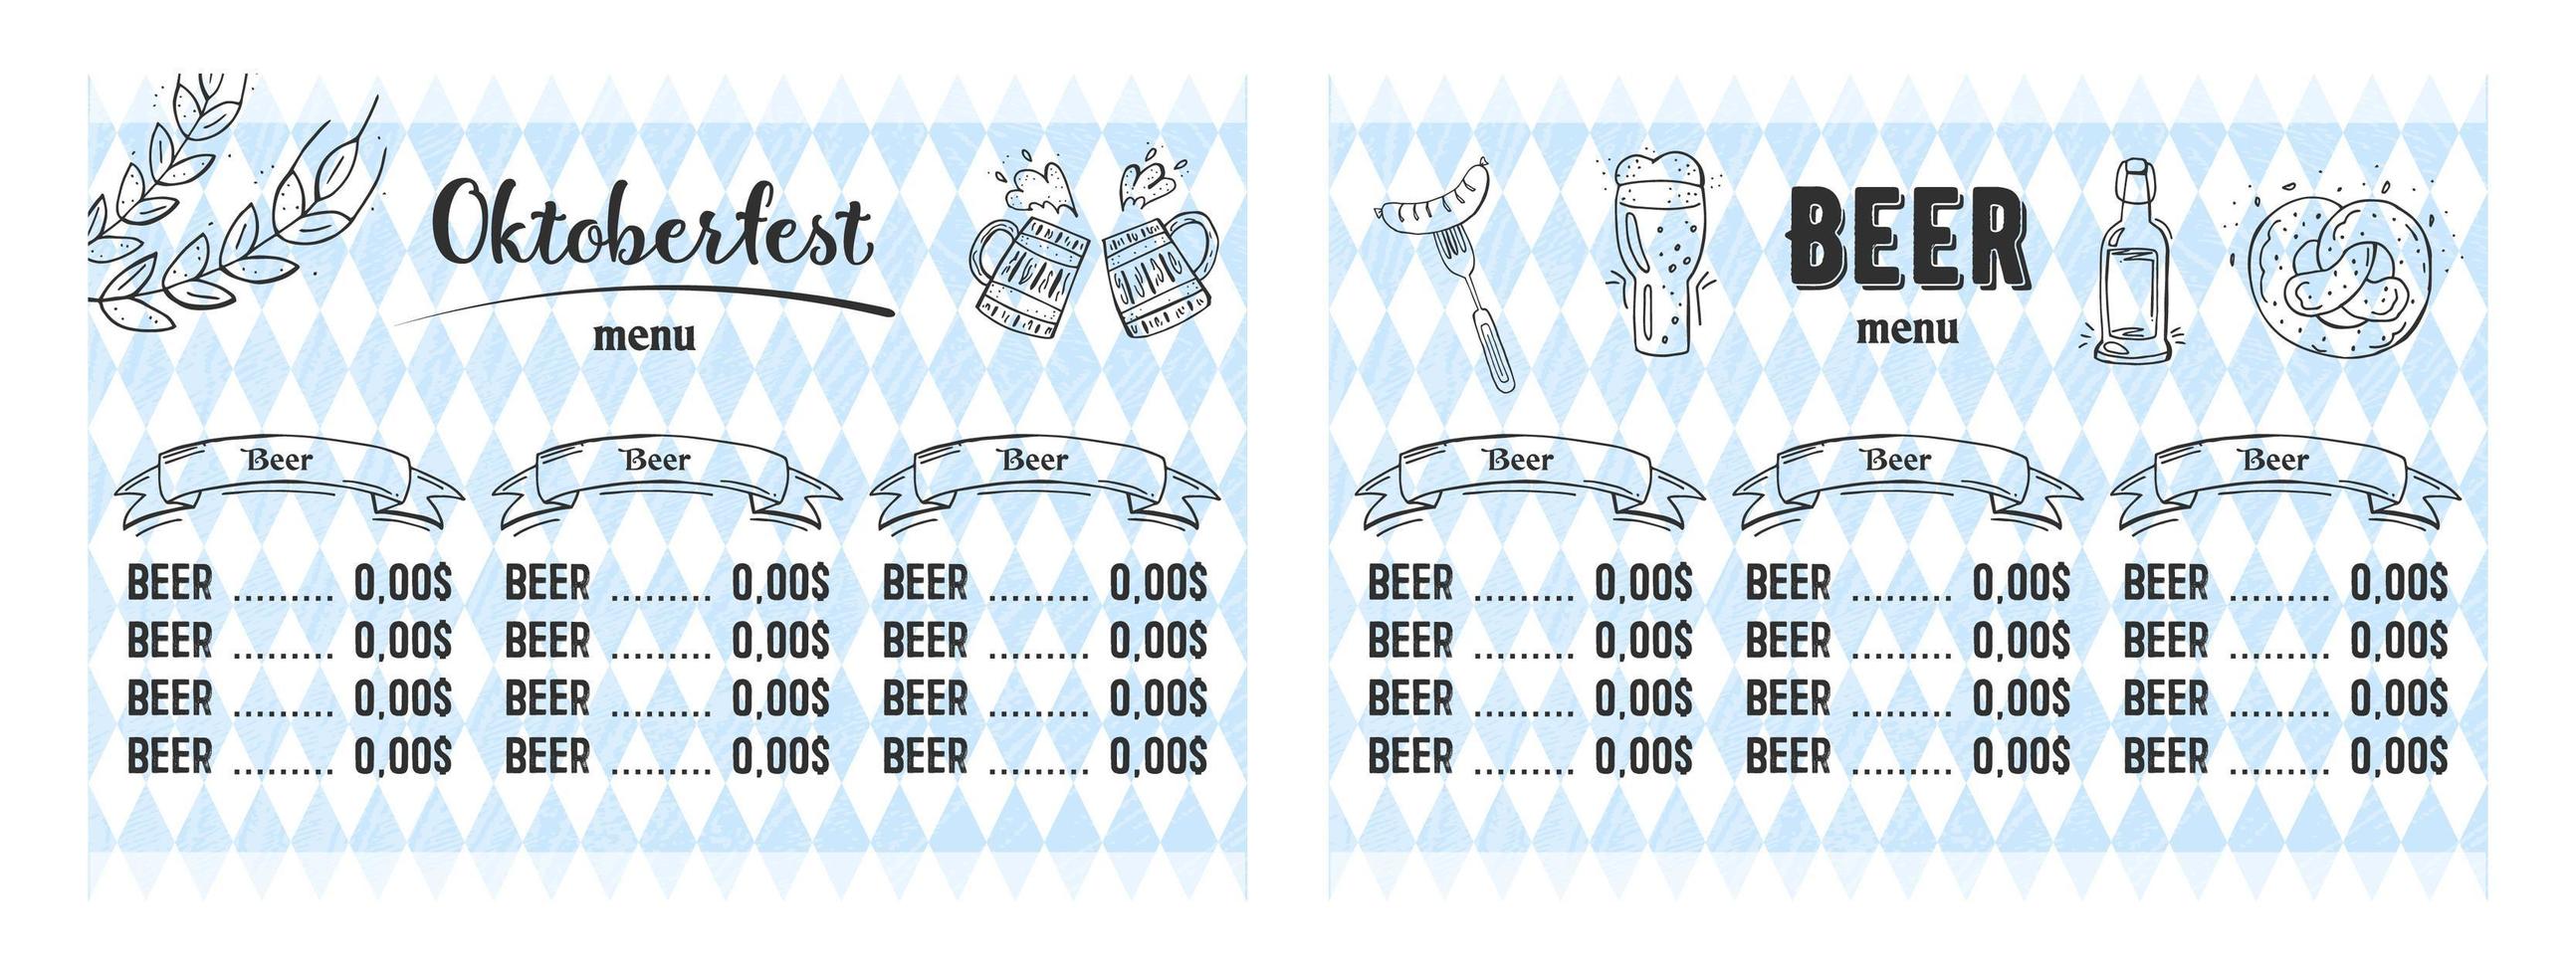 oktoberfest 2022 - festival da cerveja. elementos de doodle desenhados à mão. feriado tradicional alemão. outubro, cerveja artesanal. losango azul-branco. menu de cerveja horizontal. vetor